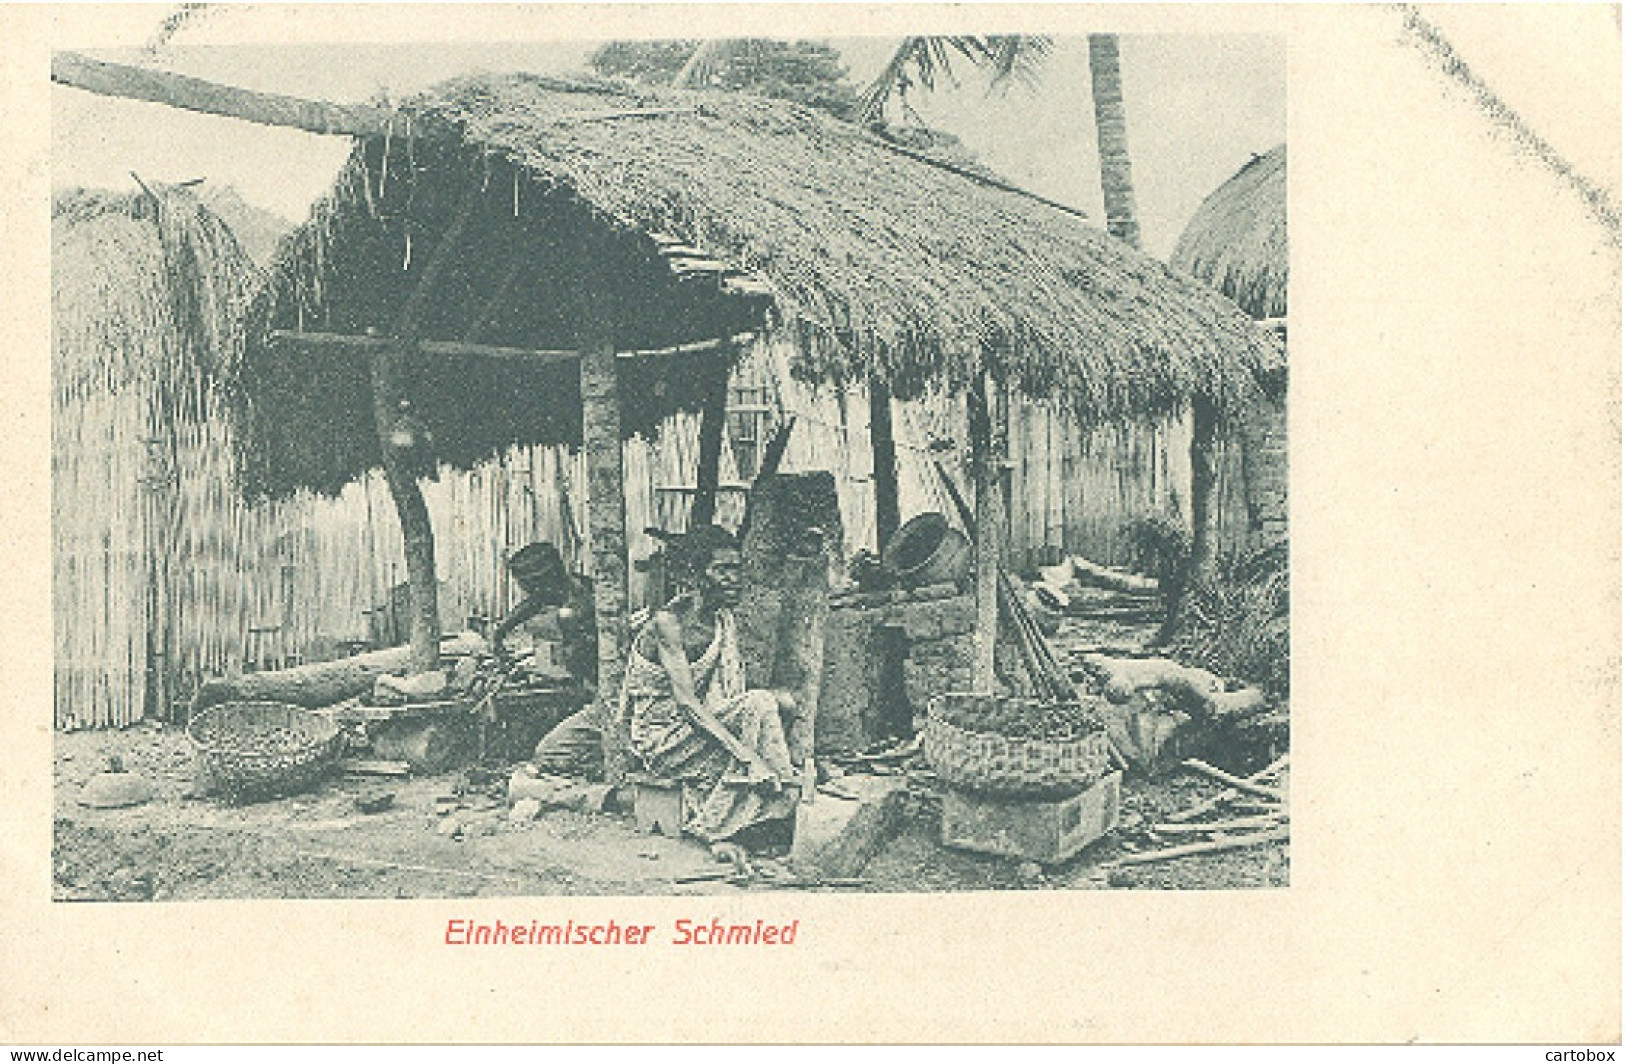 Togo, Einheimischer Schmied (inheemse Smid) (native Smith) - Togo